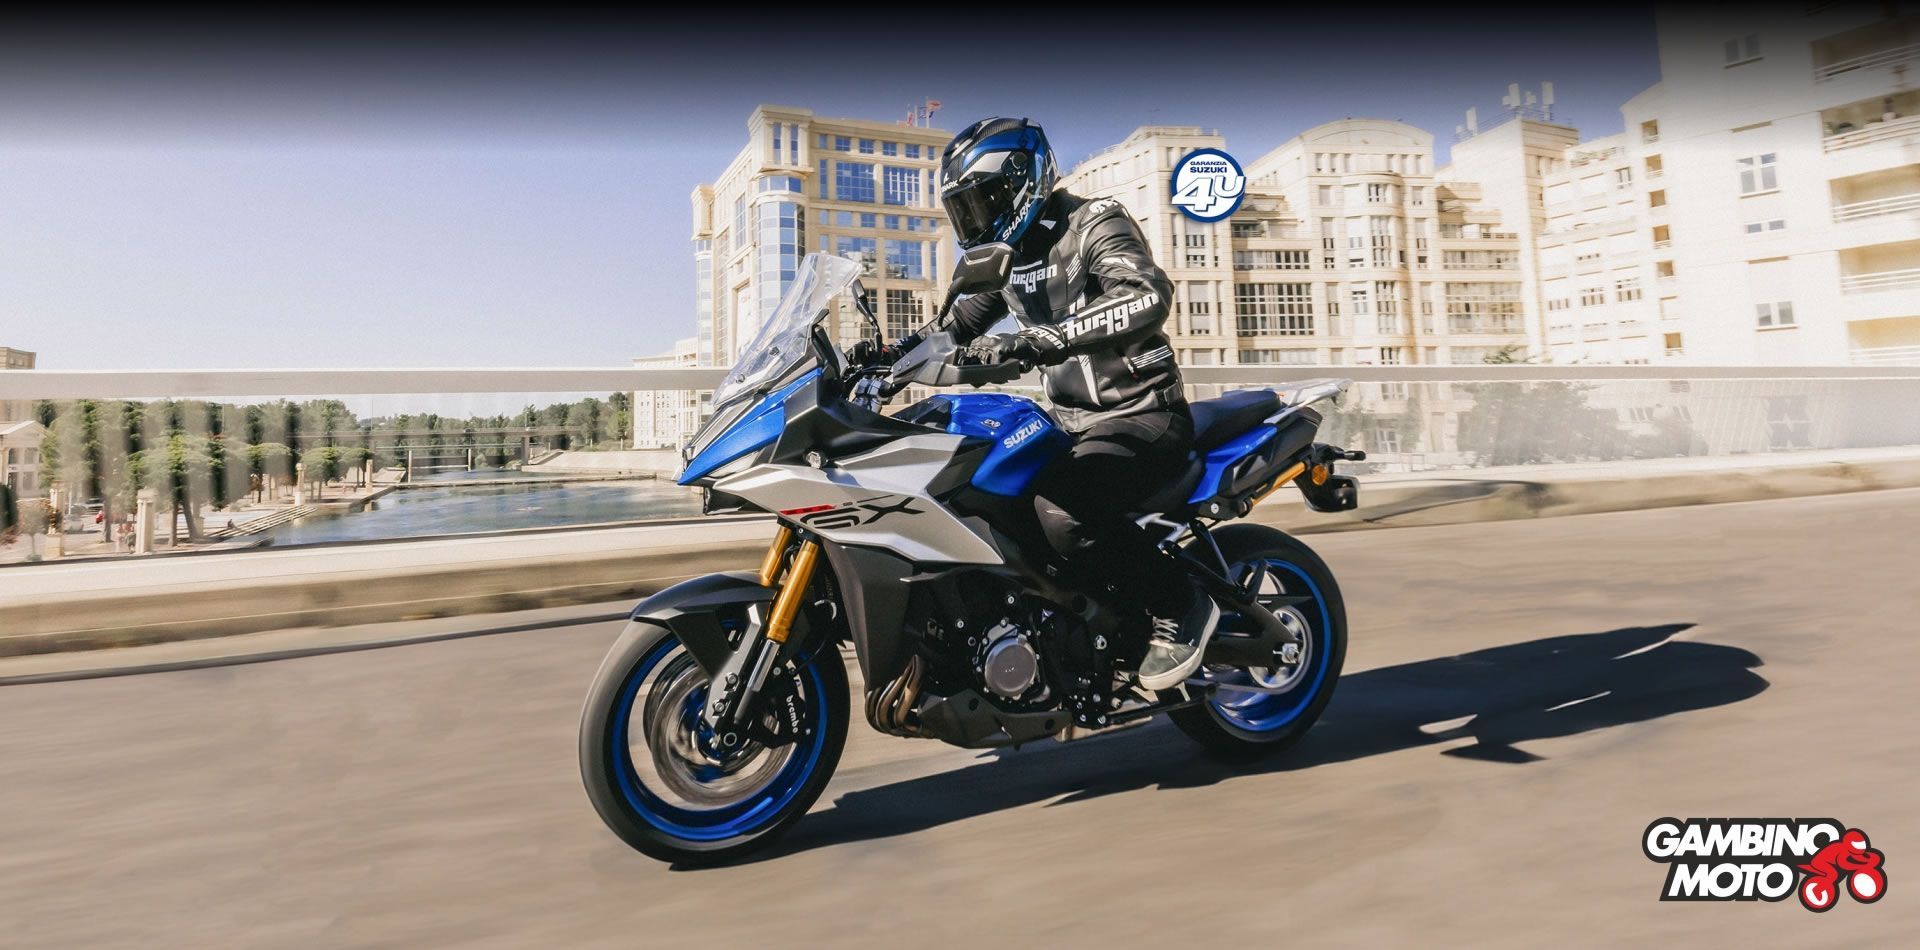 Gambino Moto, concessionaria ufficiale Suzuki Moto, Sym scooter, CF Moto, accessori e abbigliamento moto